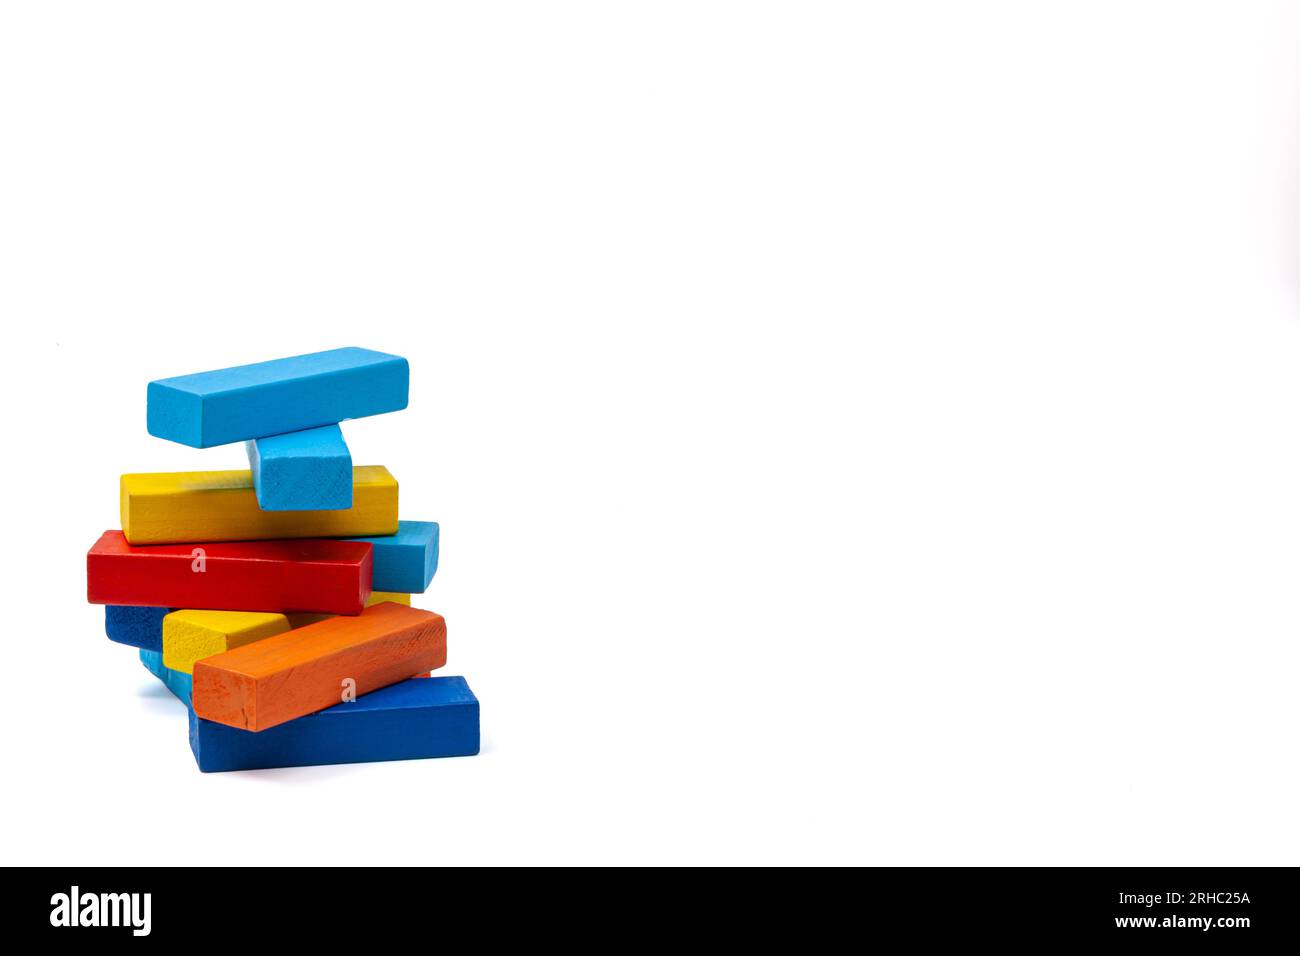 Bleu et bleu, jaune et rouge avec des blocs de bois orange pour tourelle de stand de jeu pour enfants. Isoler. Photo de haute qualité. Pour le texte. Banque D'Images